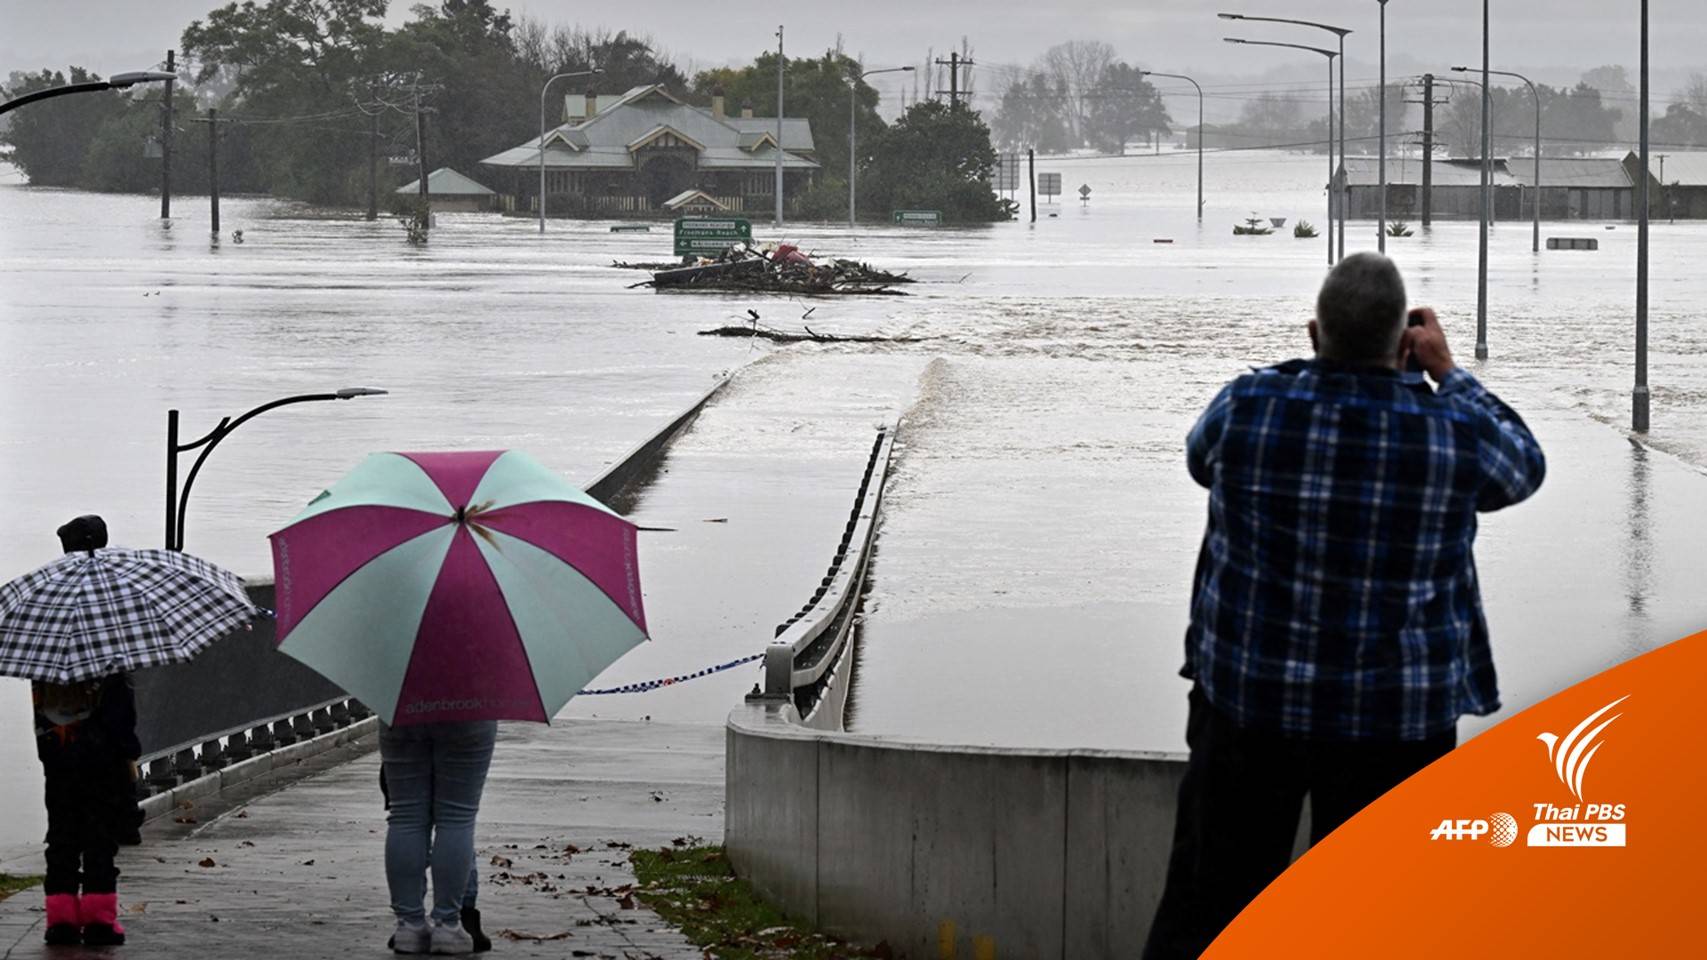 ฝนกระหน่ำ "ออสเตรเลีย" อพยพหลายพันคนหนีน้ำท่วมซิดนีย์